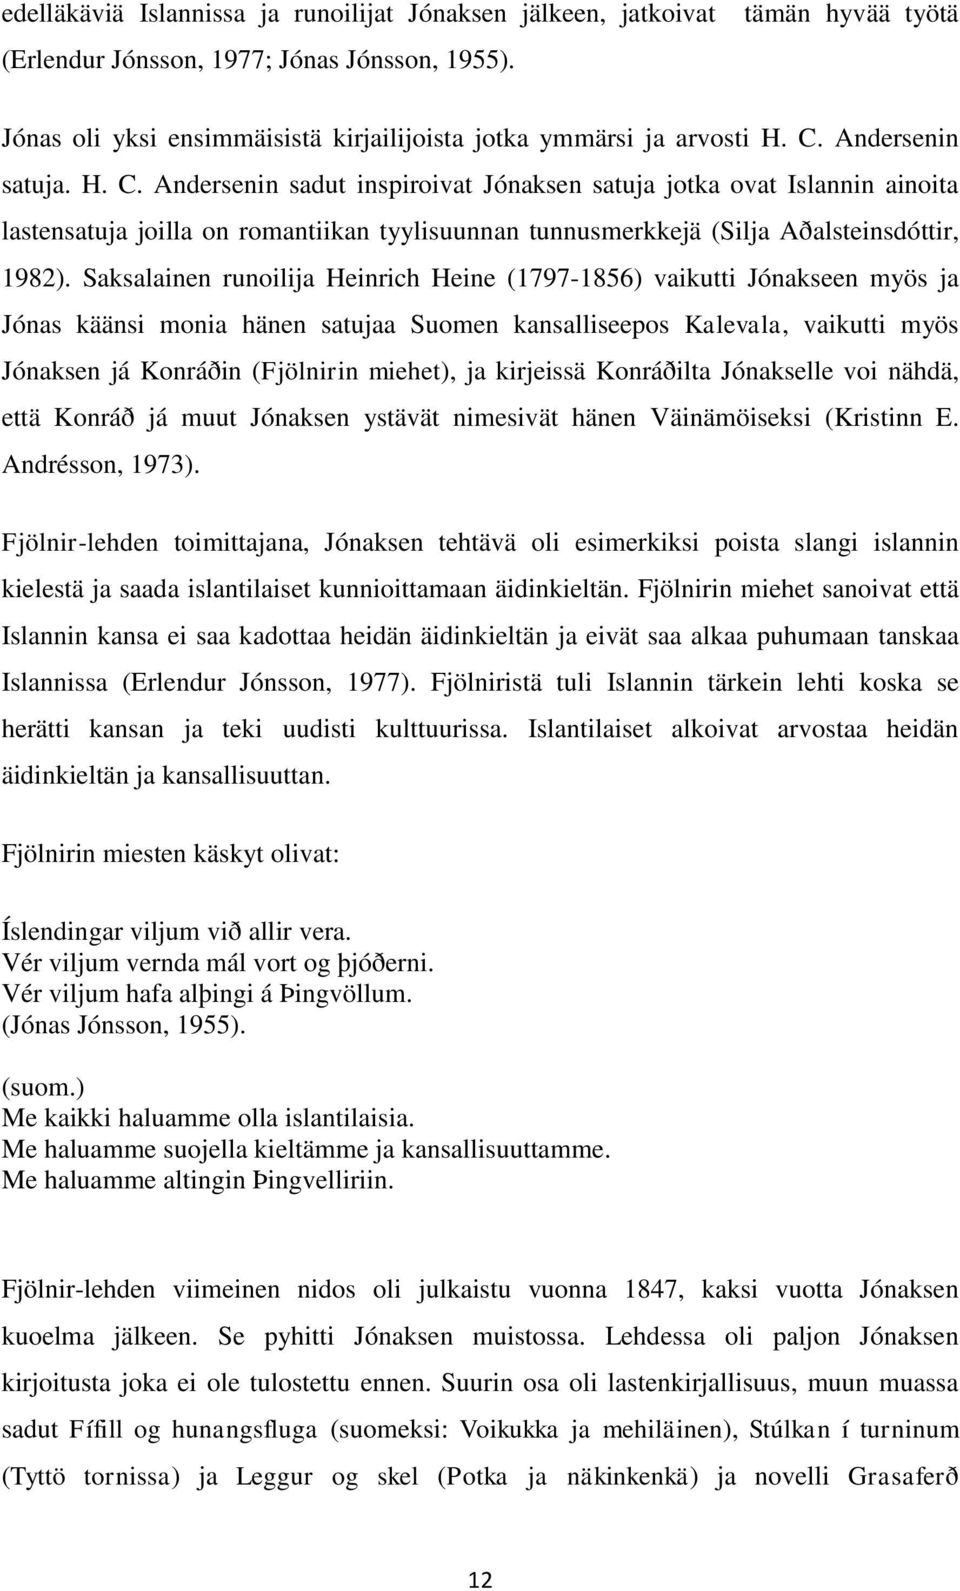 Andersenin satuja. H. C. Andersenin sadut inspiroivat Jónaksen satuja jotka ovat Islannin ainoita lastensatuja joilla on romantiikan tyylisuunnan tunnusmerkkejä (Silja Aðalsteinsdóttir, 1982).